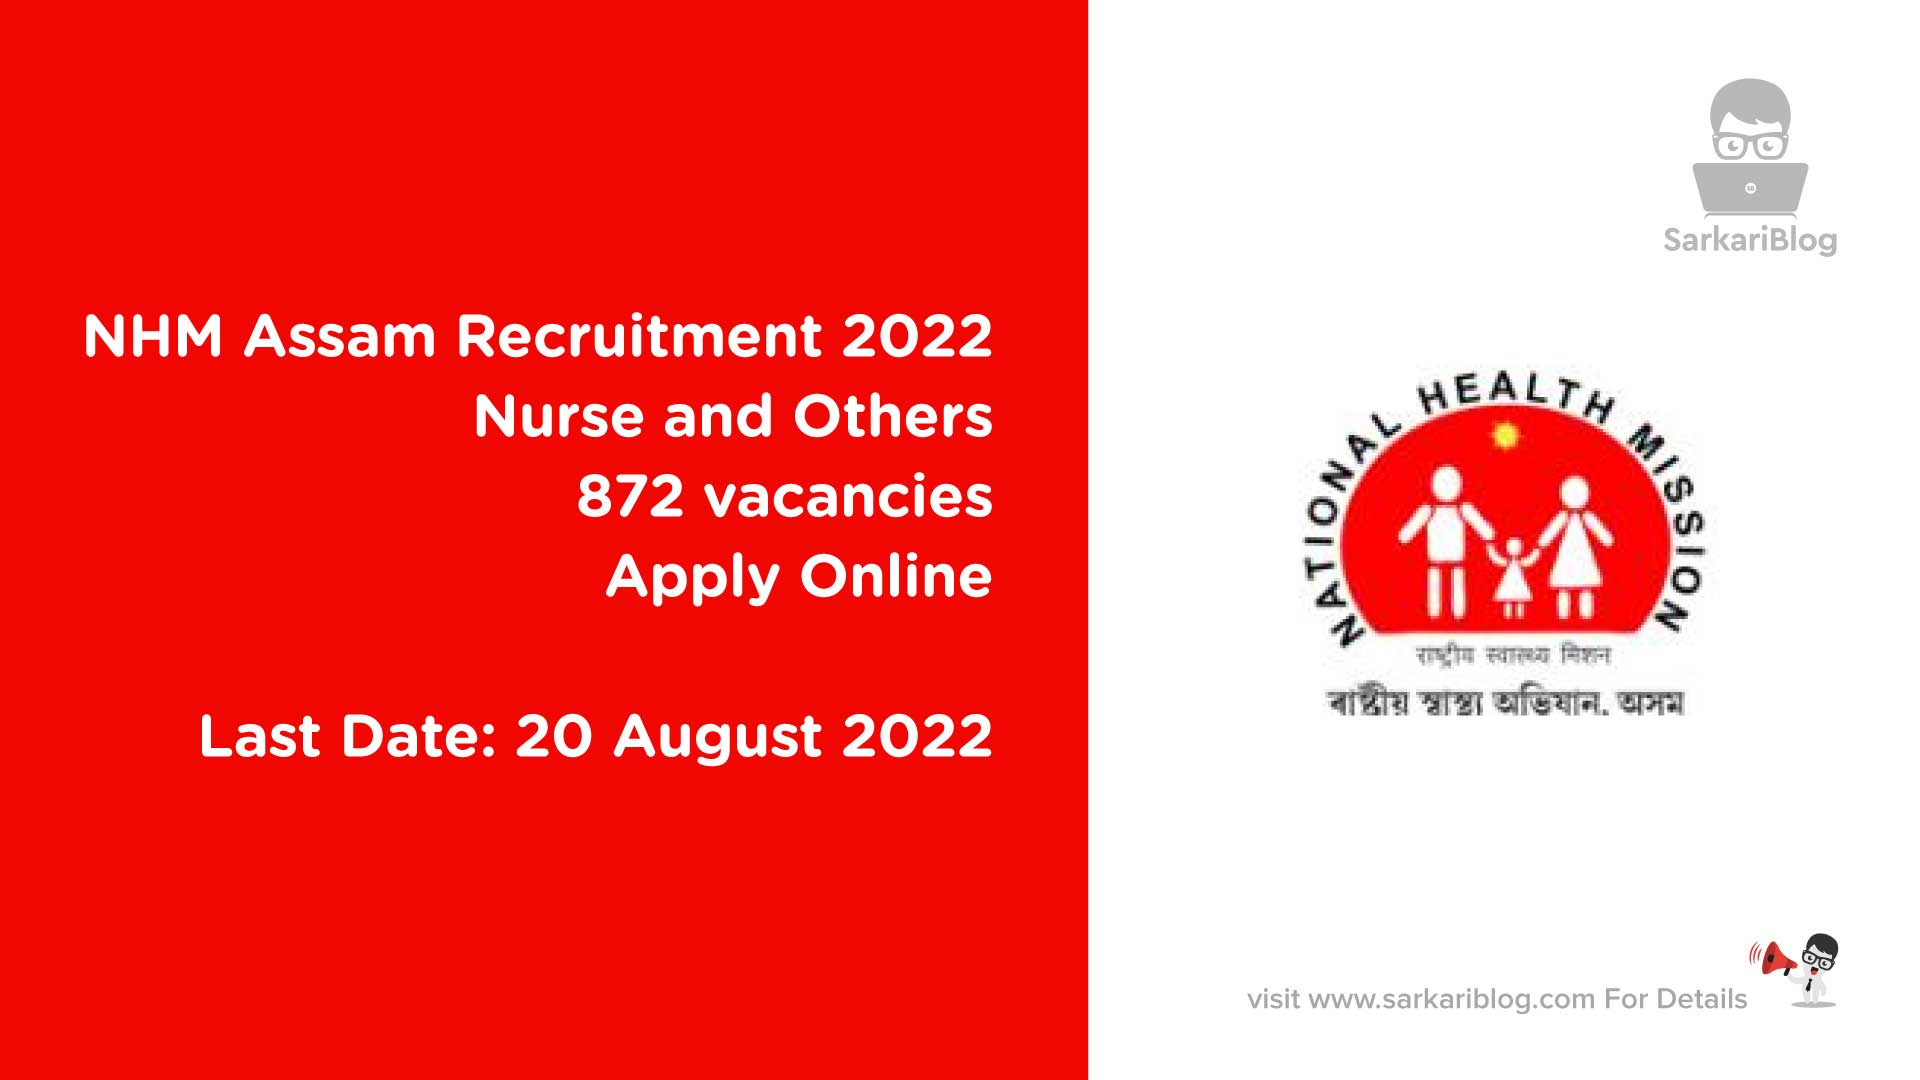 NHM Assam Recruitment 2022